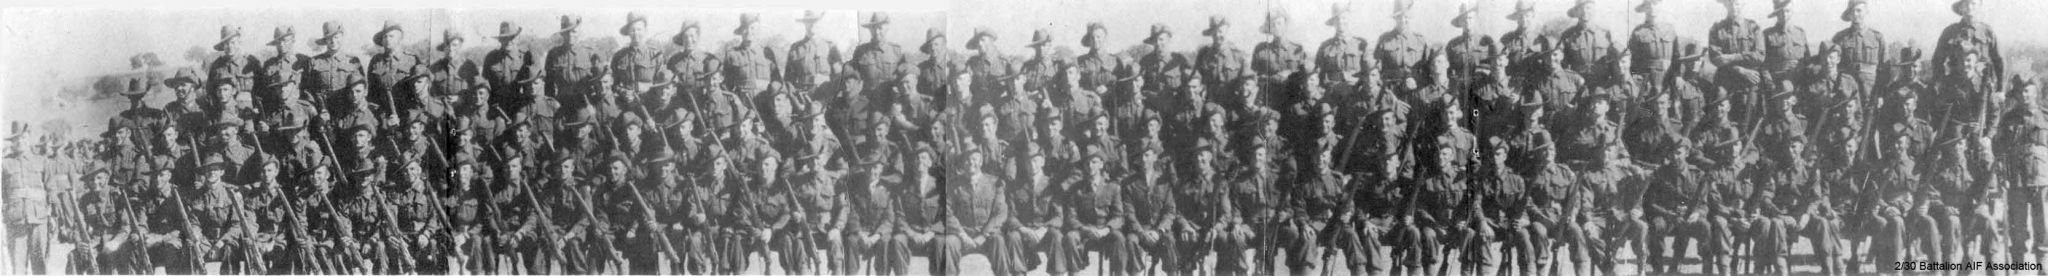 D Company
"D" Company at Bathurst, 1941.
